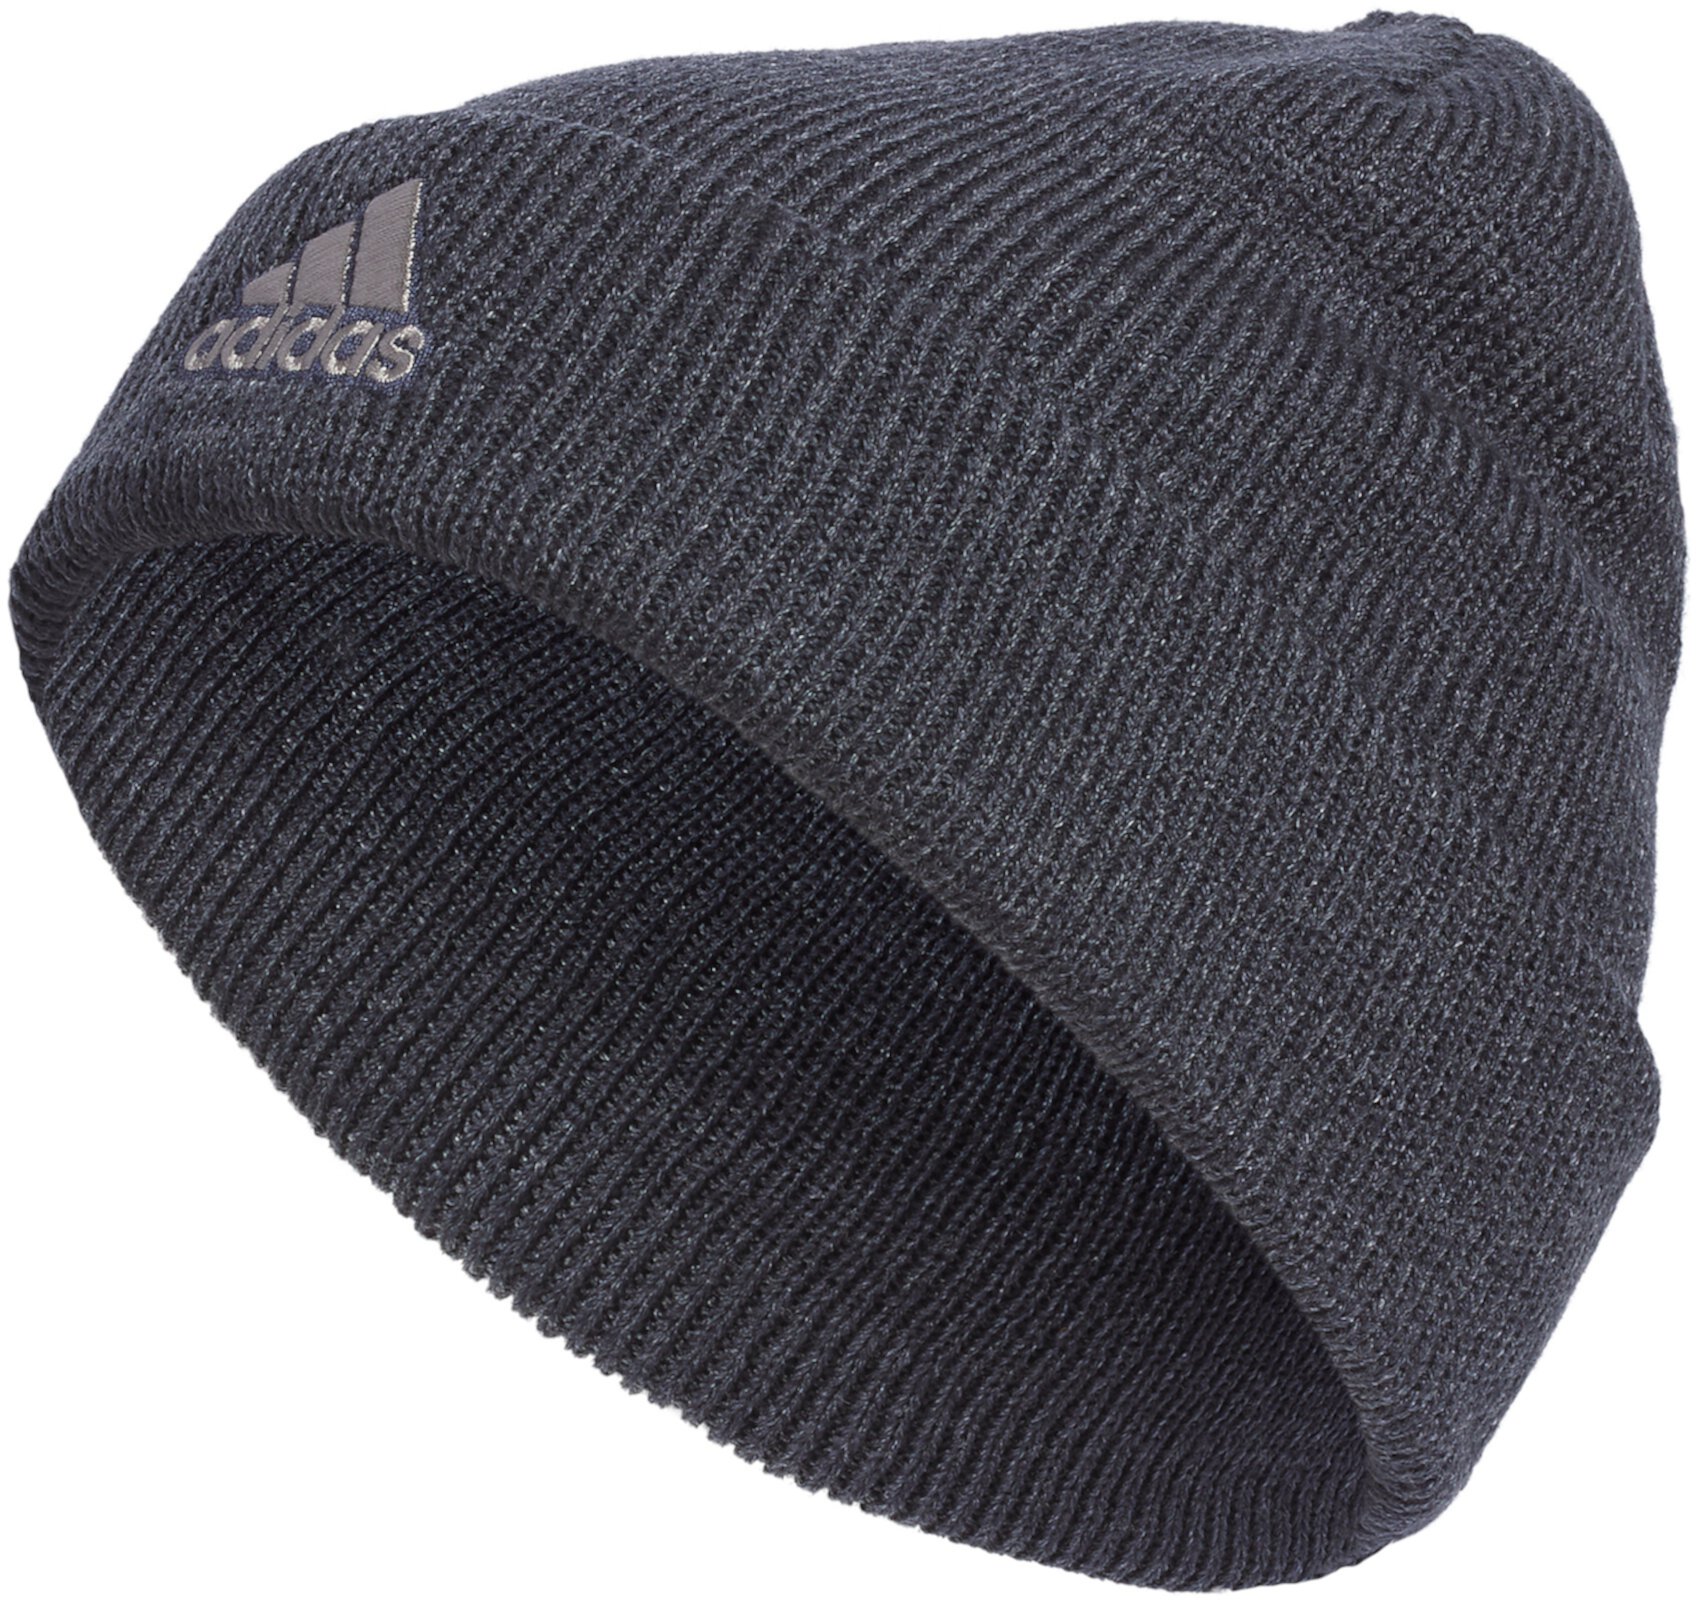 Складывающаяся шапка Team Issue Adidas